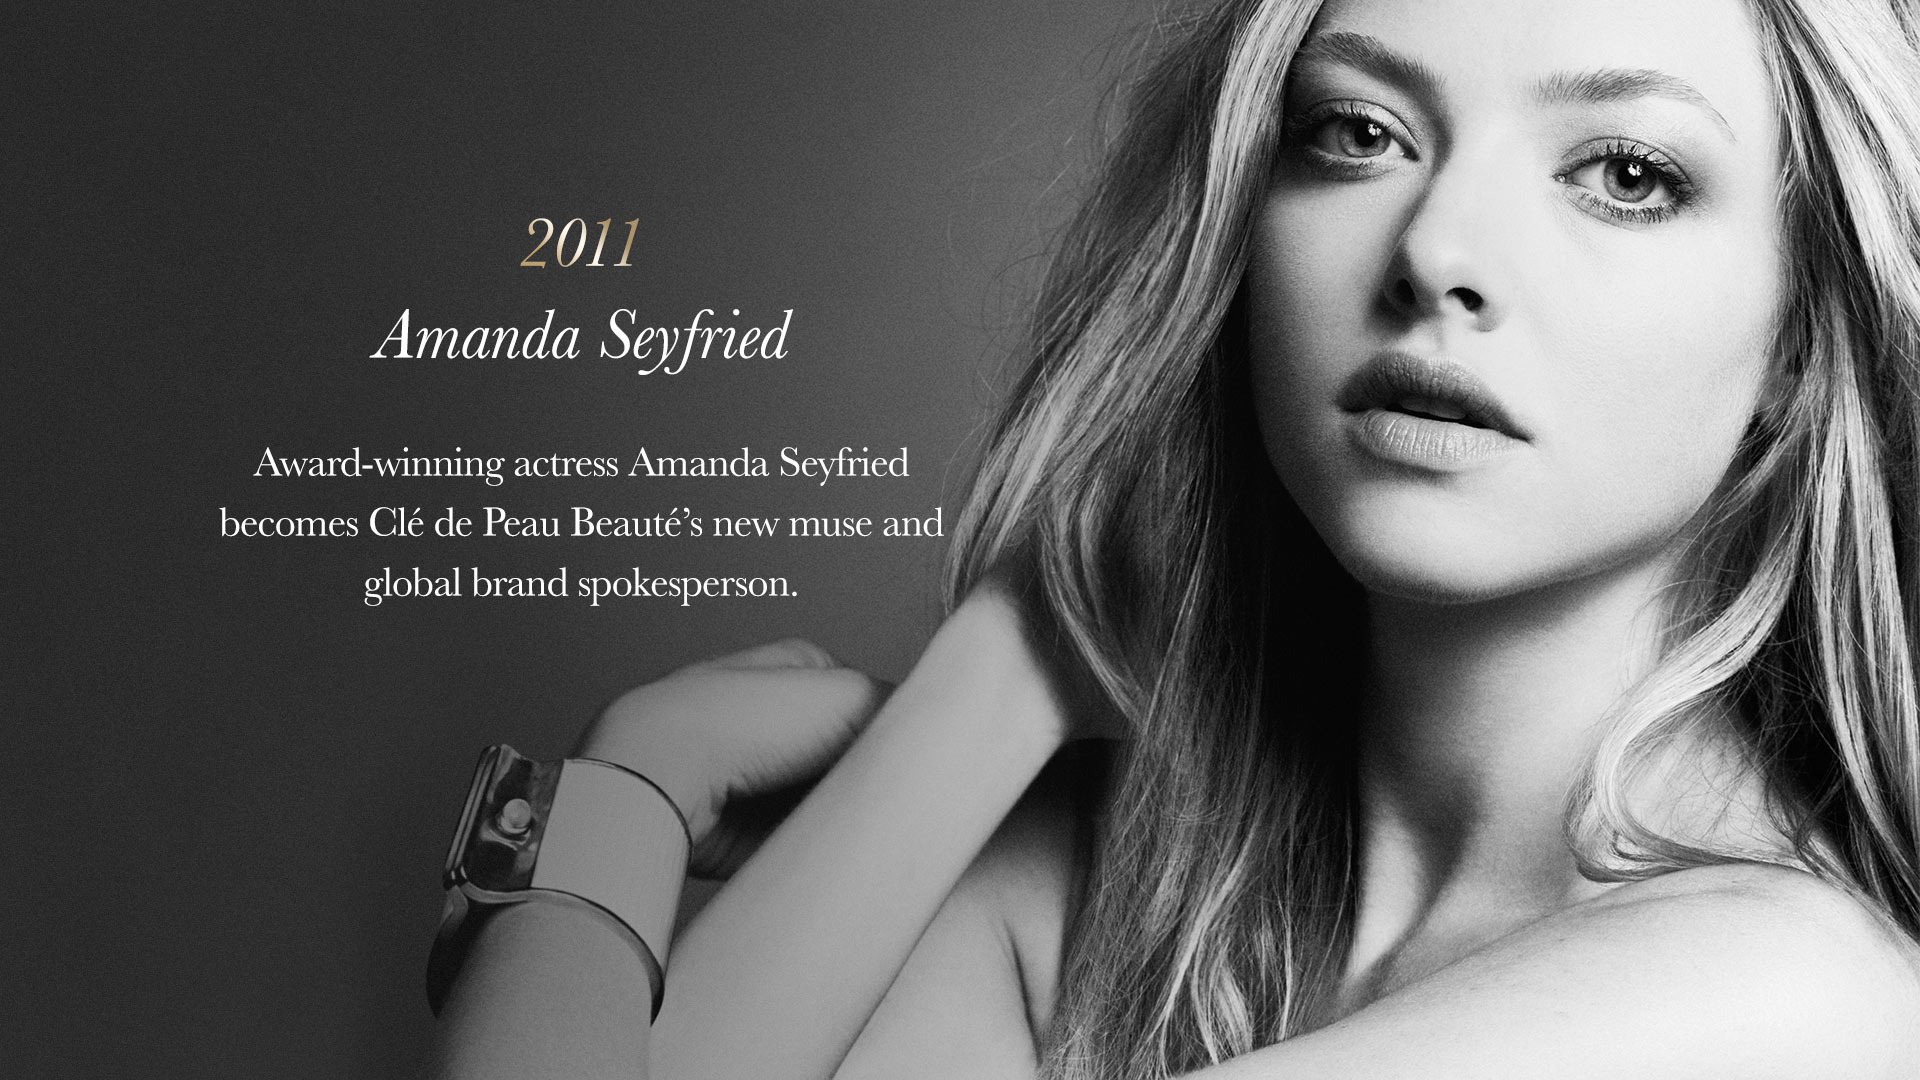 Award-winning actress Amanda Seyfried becomes Clé de Peau Beauté’s new muse and global brand spokesperson.